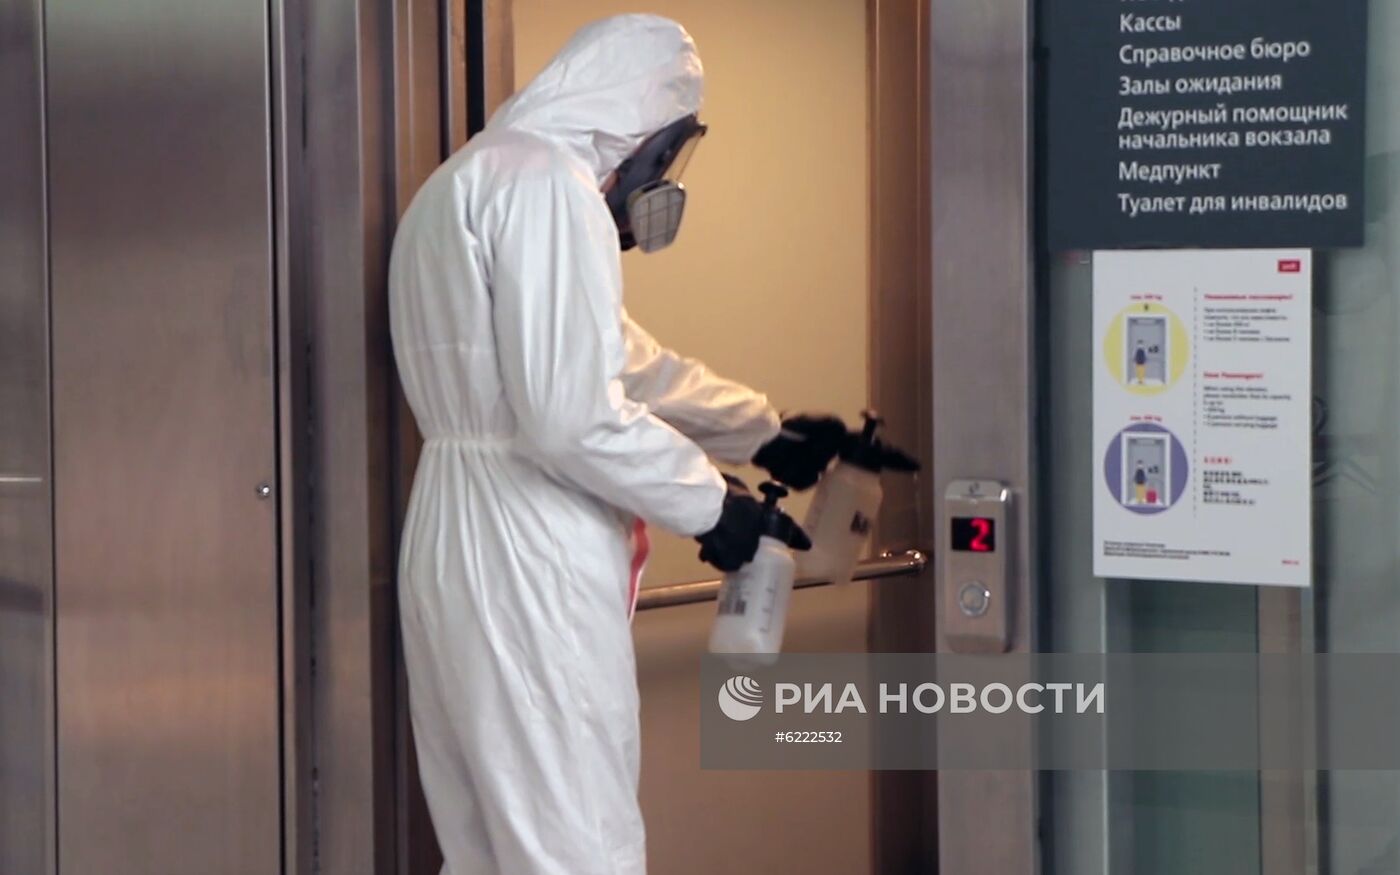 Сотрудники МЧС России провели дезинфекцию Ленинградского вокзала в Москве